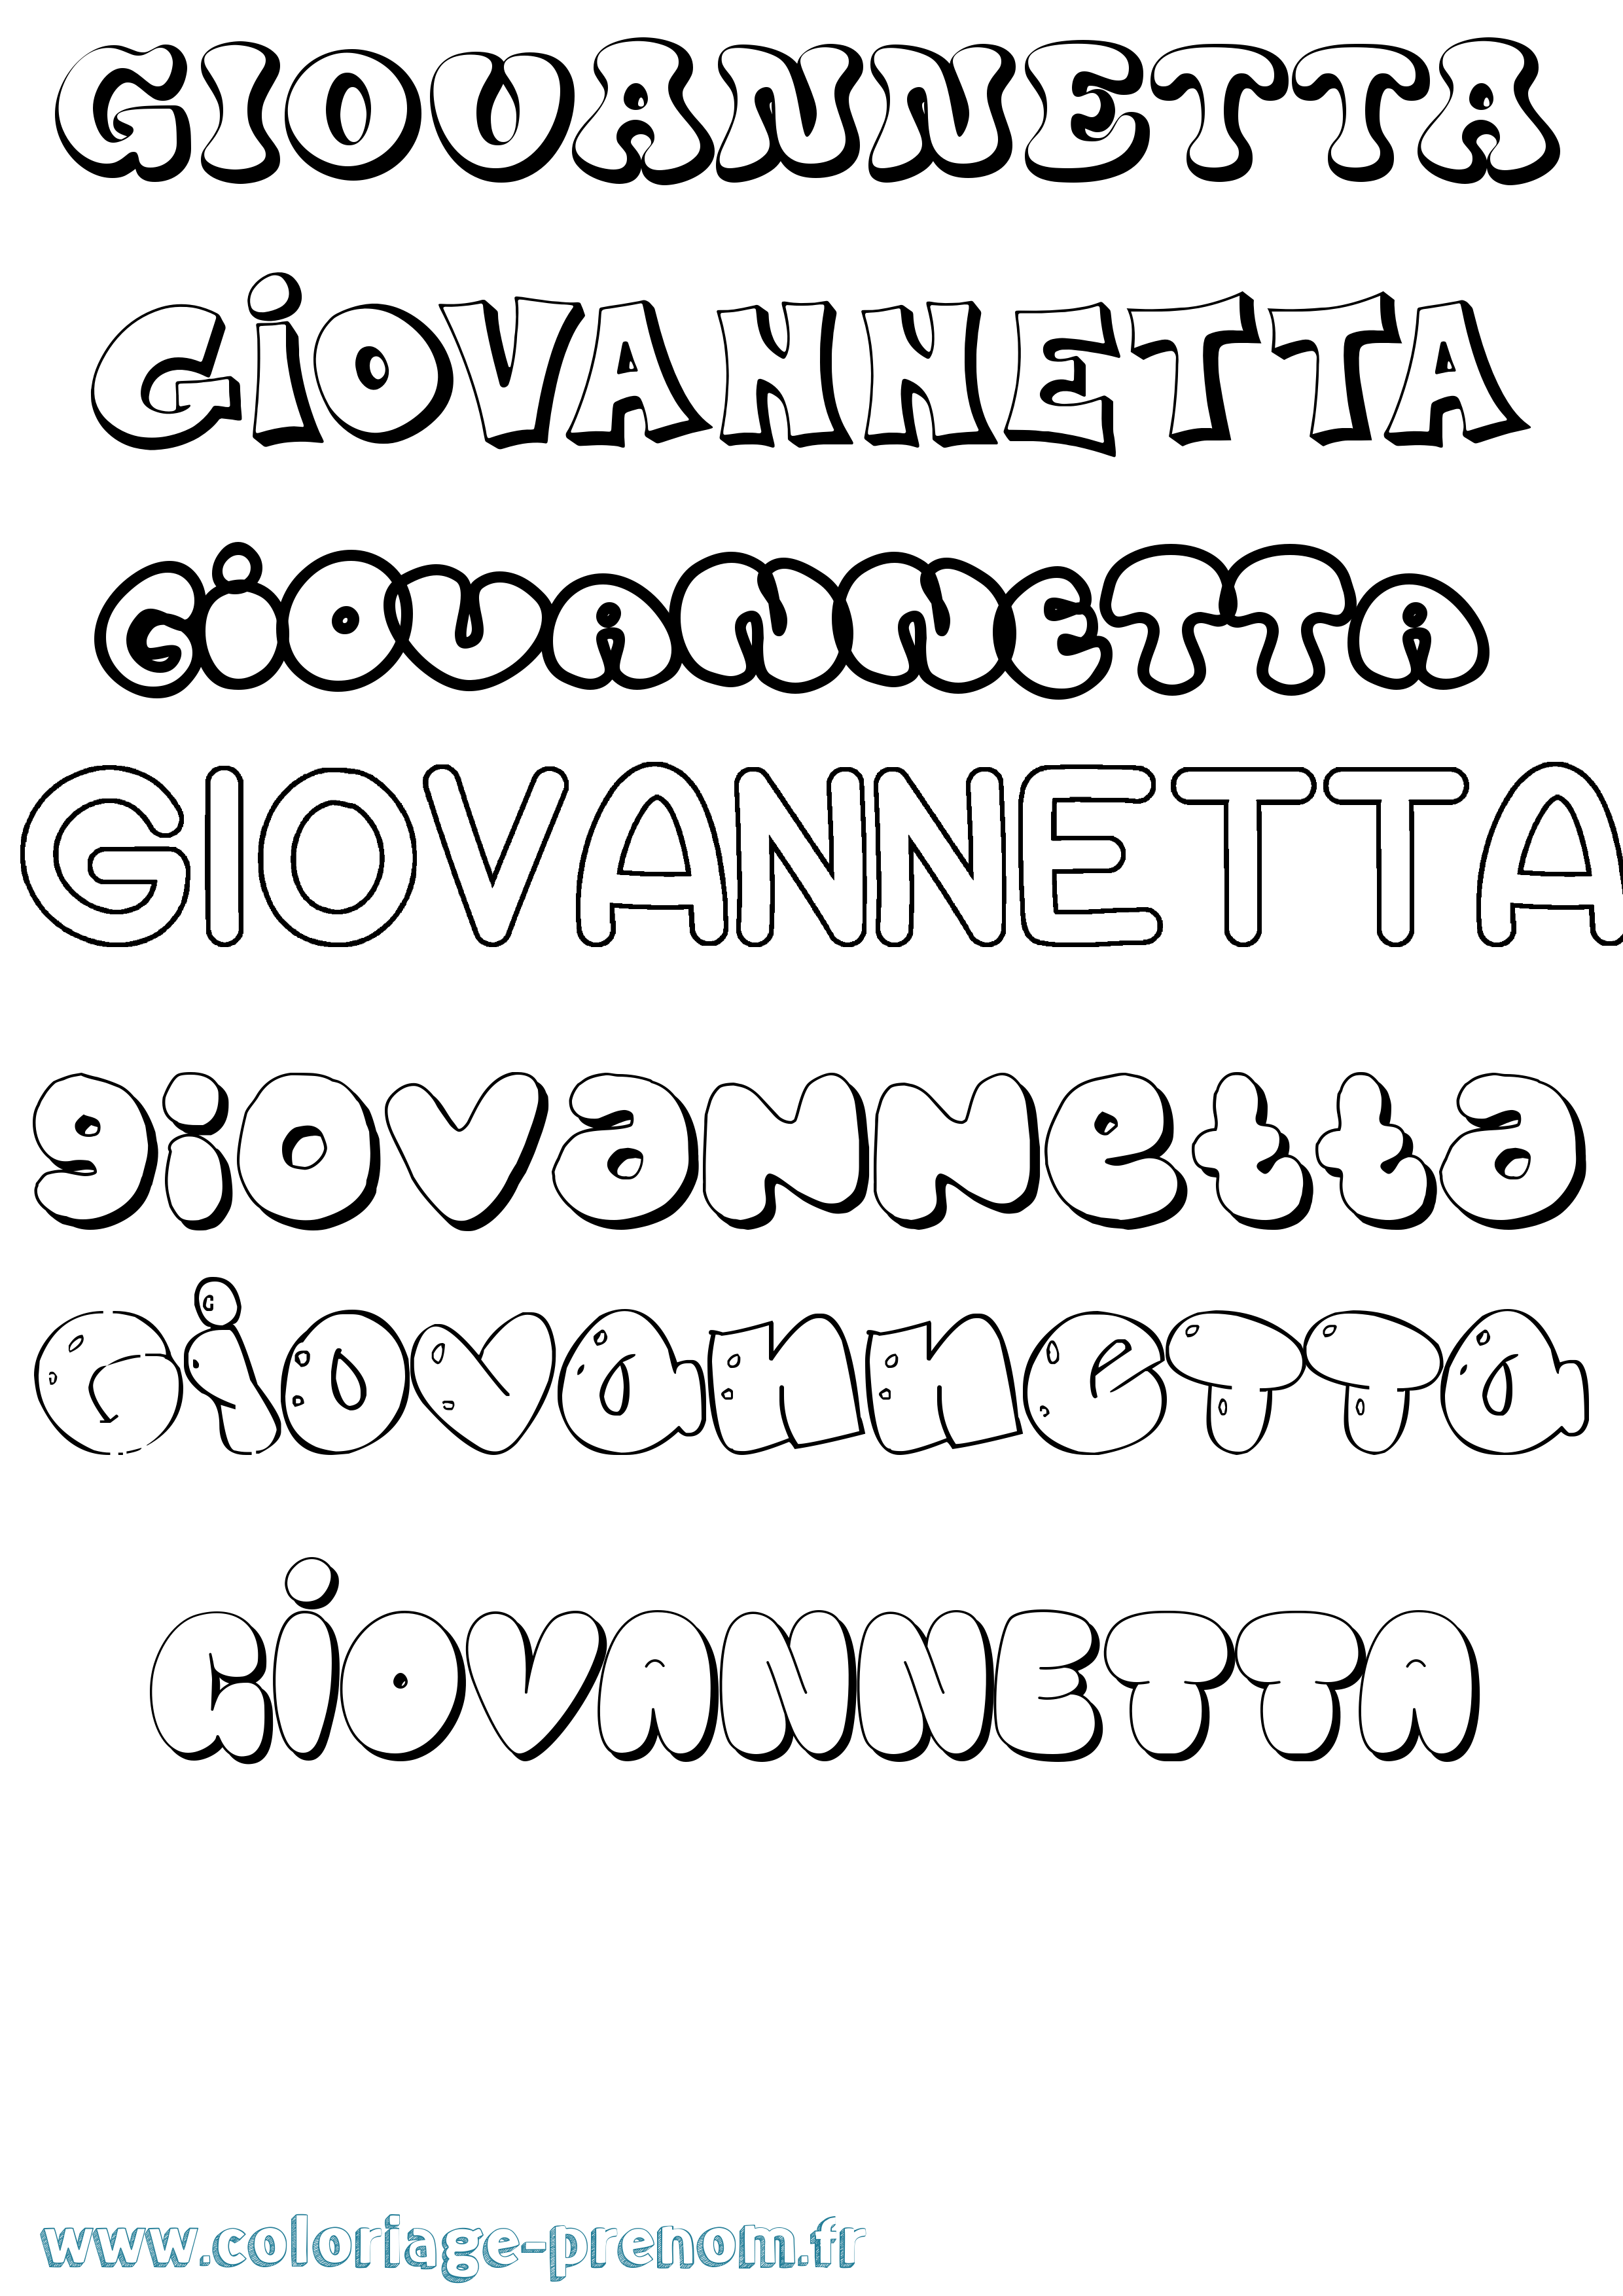 Coloriage prénom Giovannetta Bubble